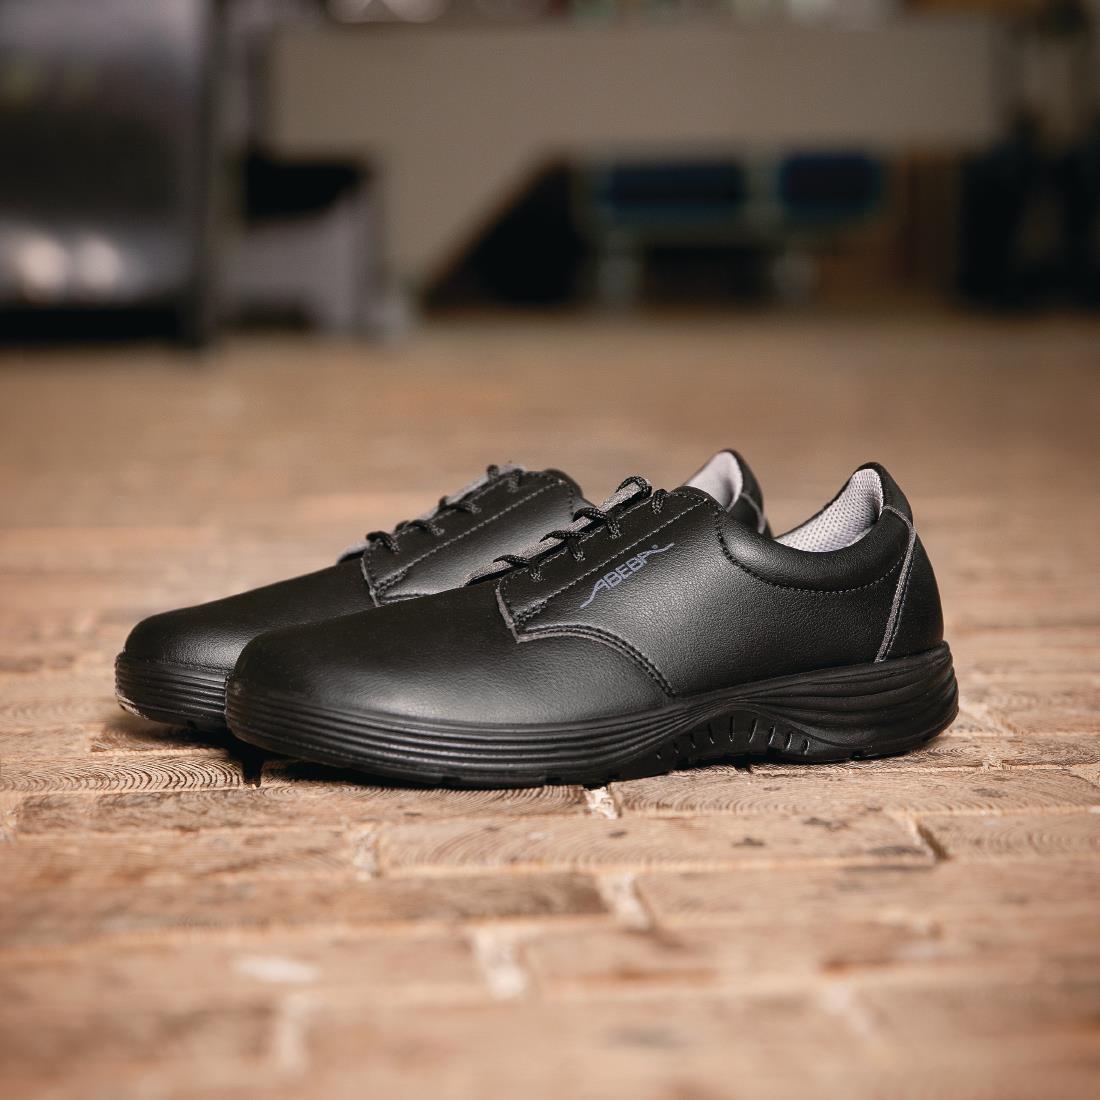 Abeba X-Light Microfiber Lace Up Safety Shoe Black 45